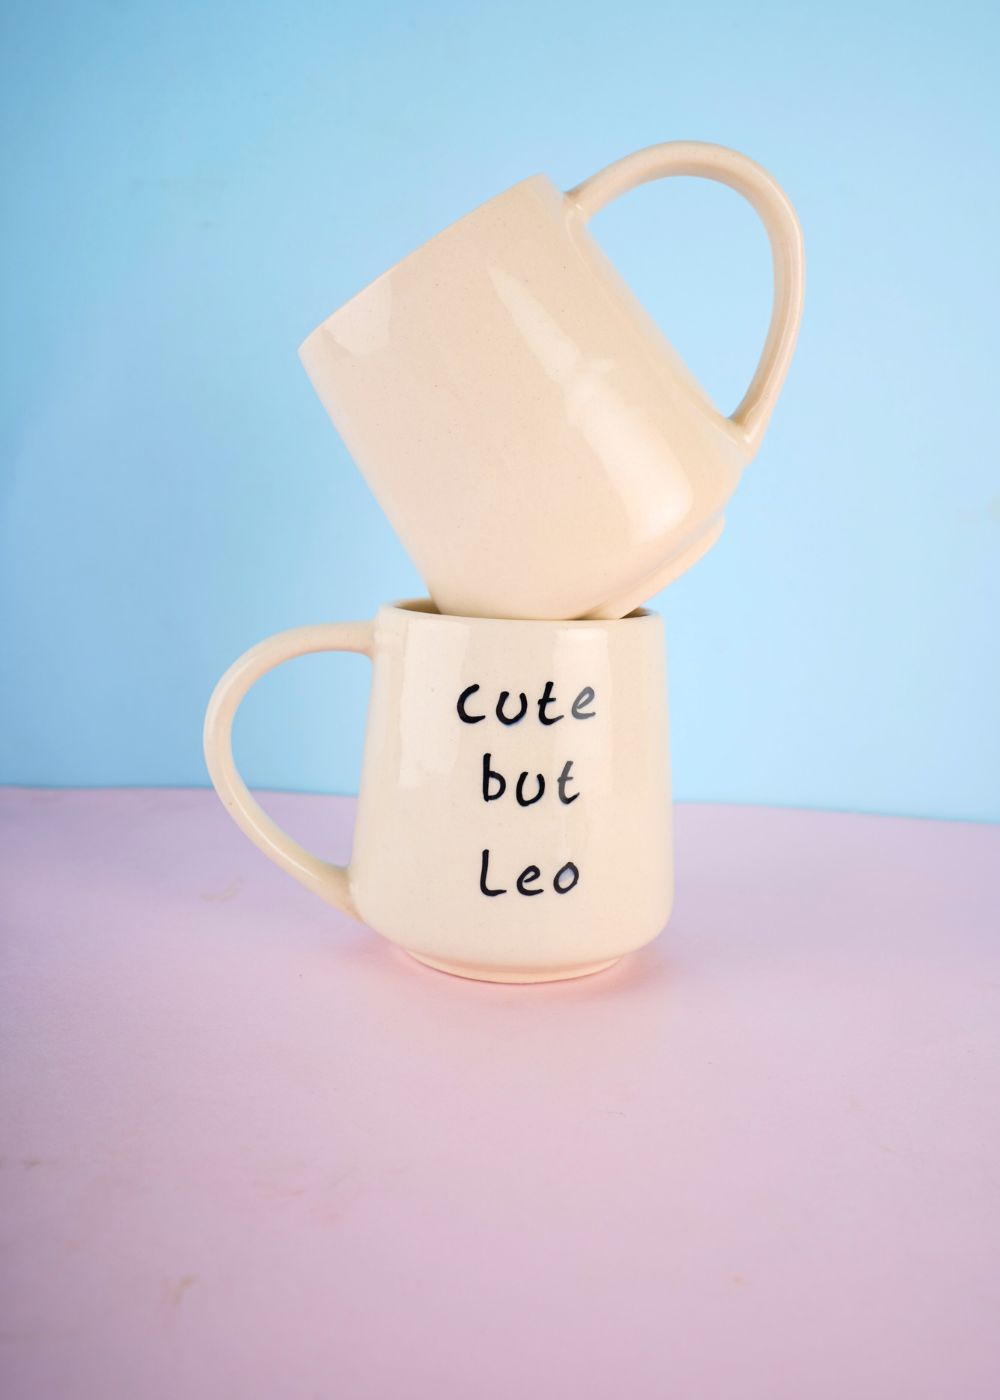 cute but leo mug handmade in india